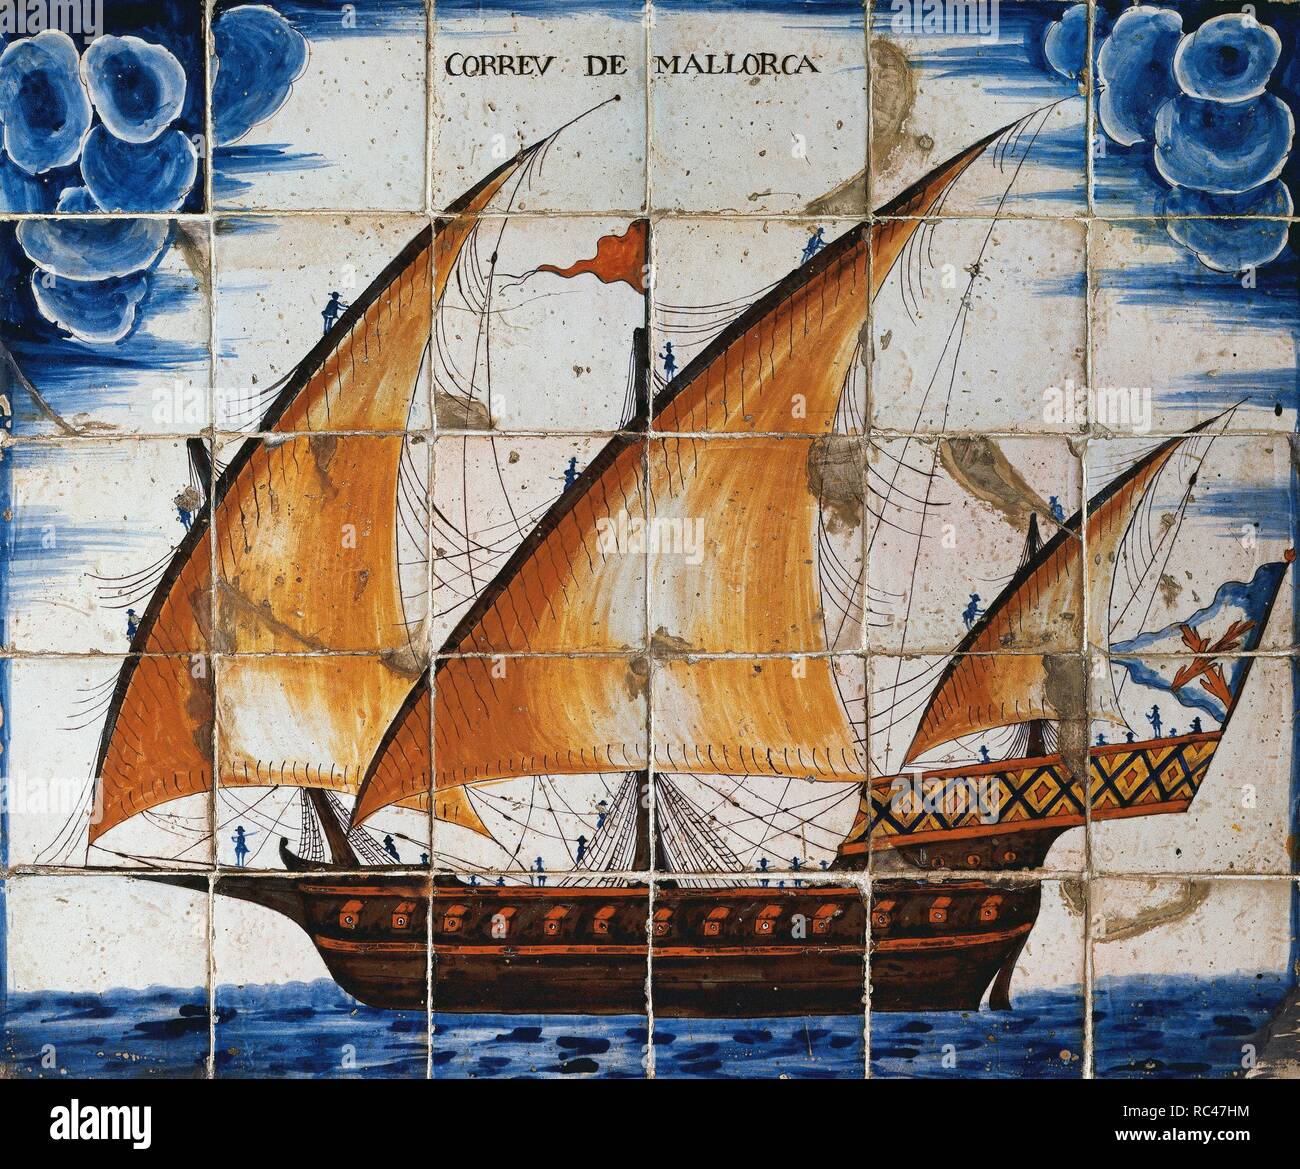 Panneau en céramique représentant le mail de Mallorca, xebec genre de bateau, 18ème siècle. Musée Maritime de Barcelone. L'Espagne. Banque D'Images